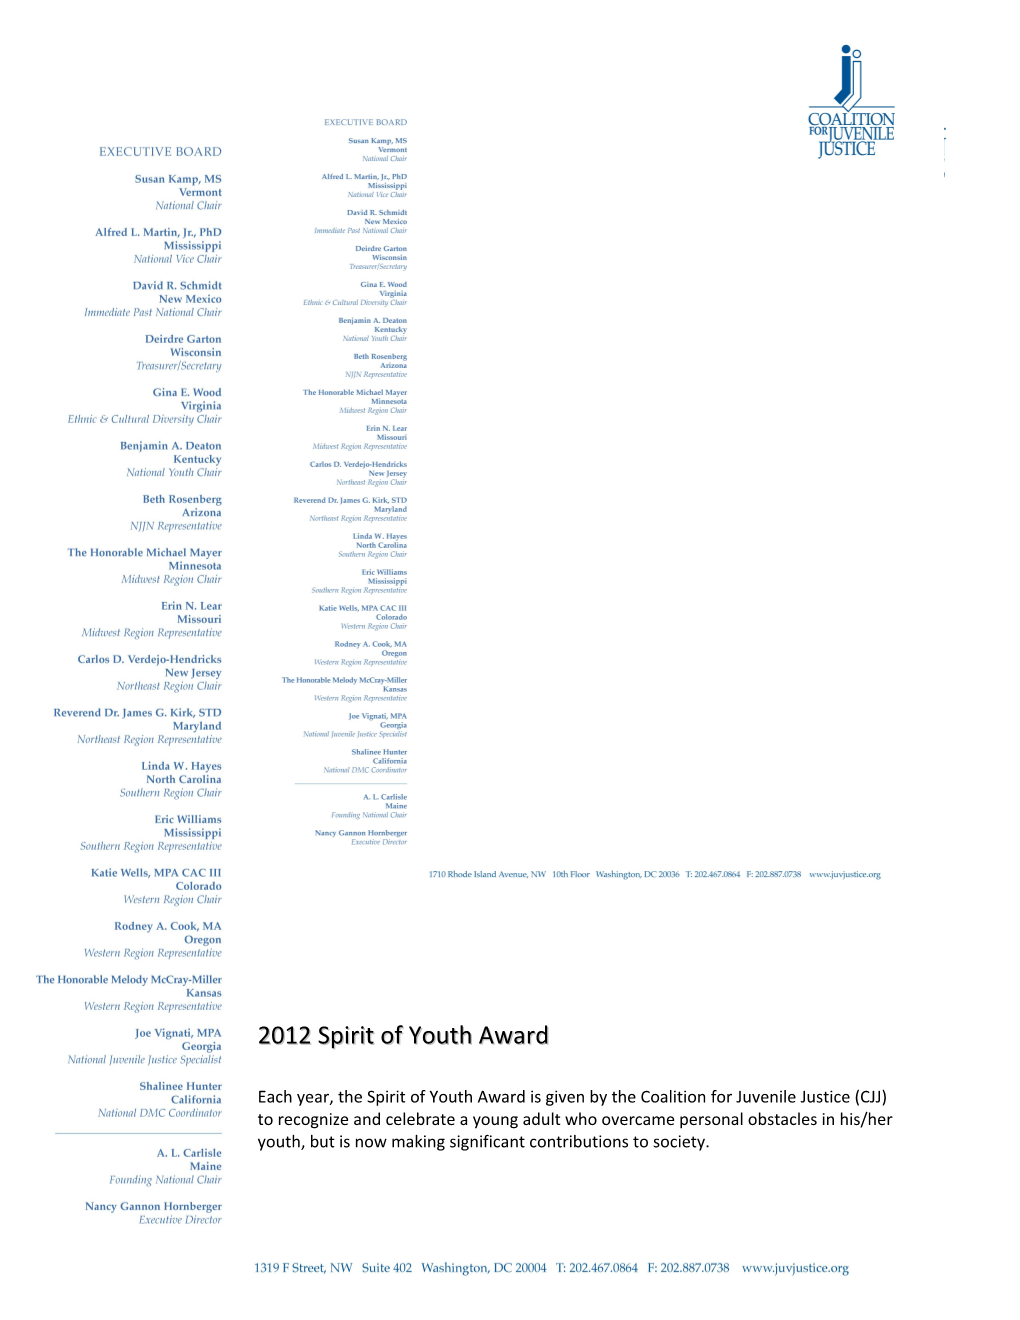 Spirit of Youth Award